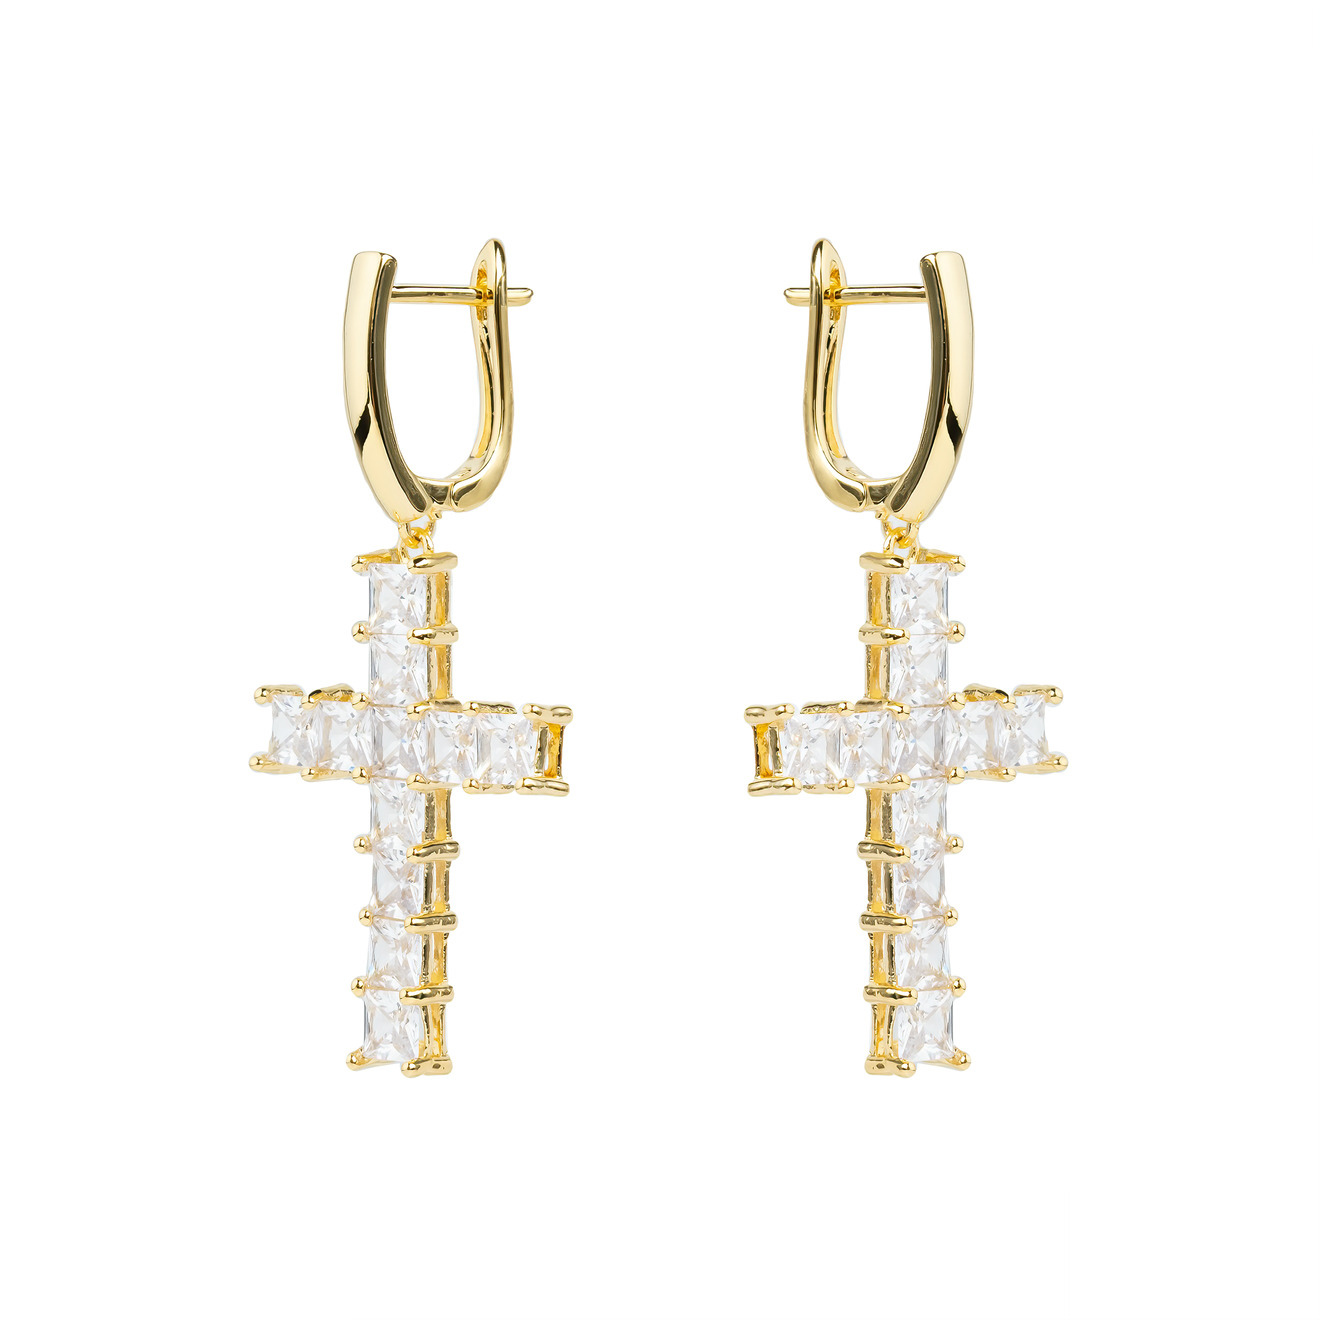 Herald Percy Золотистые серьги-кресты с кристаллами herald percy золотистые серьги стрелки с кристаллами